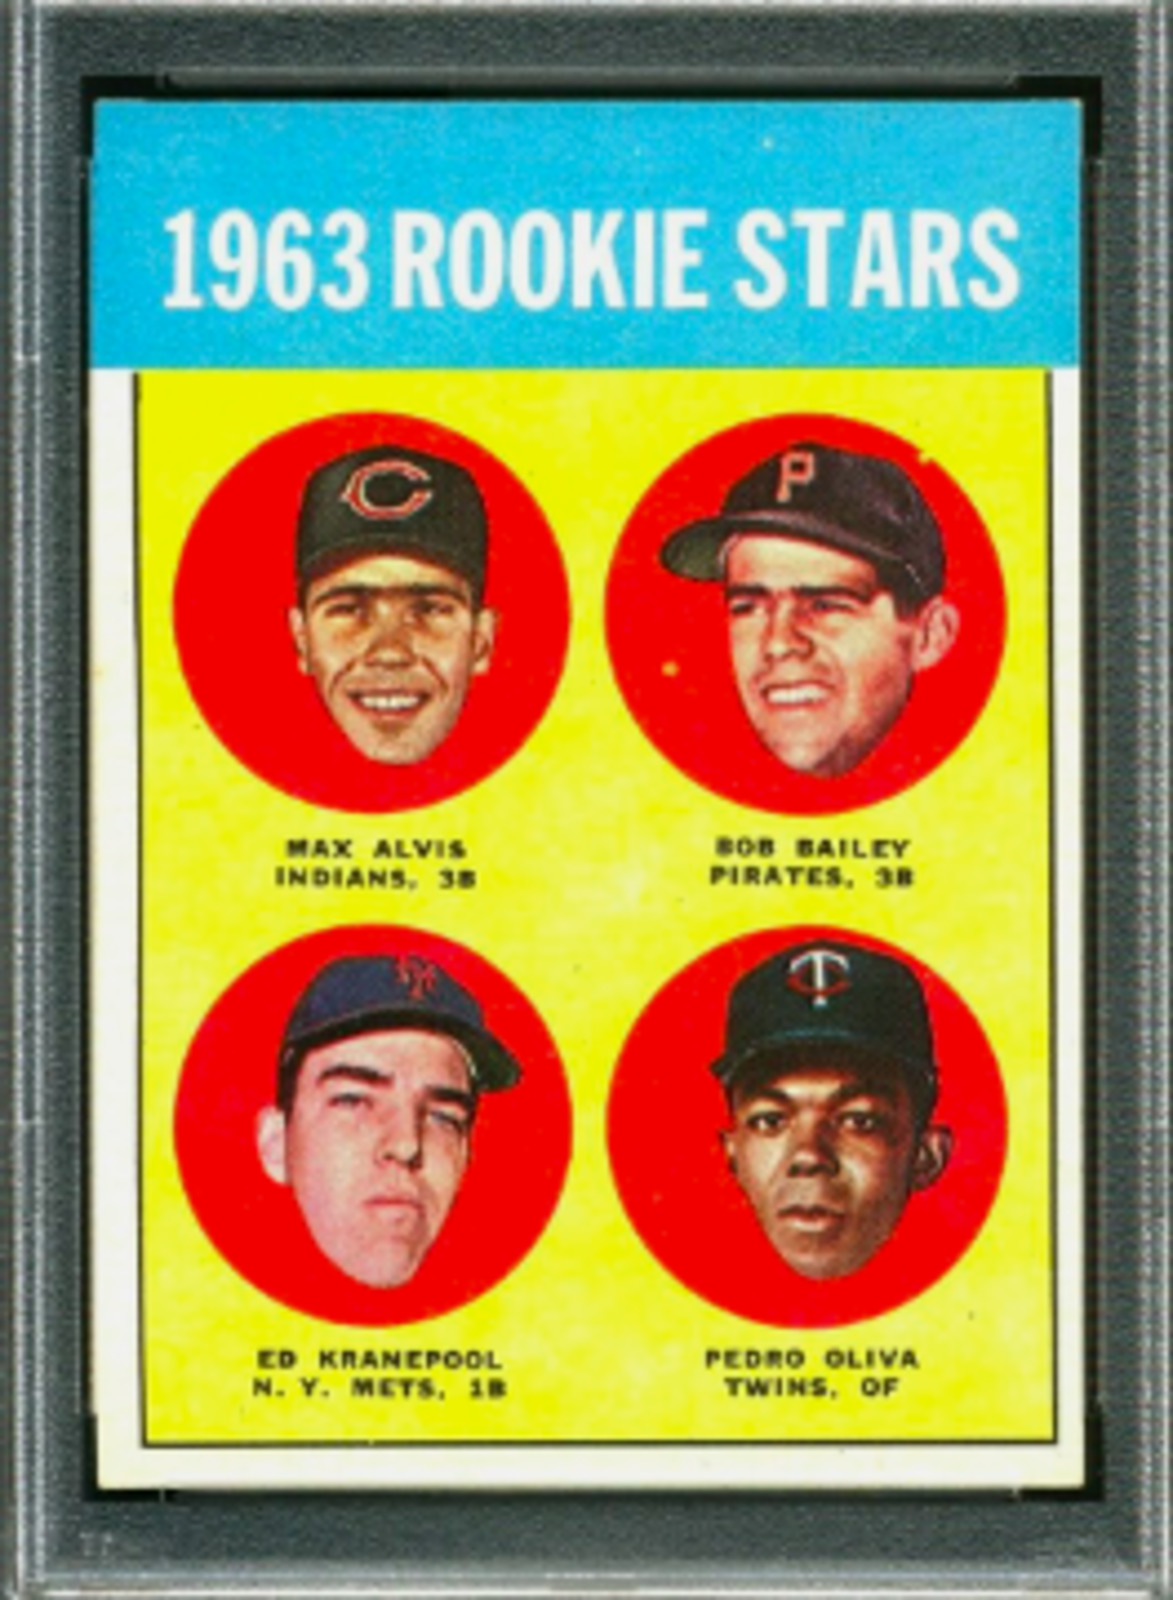 1963 Topps Tony Oliva rookie card